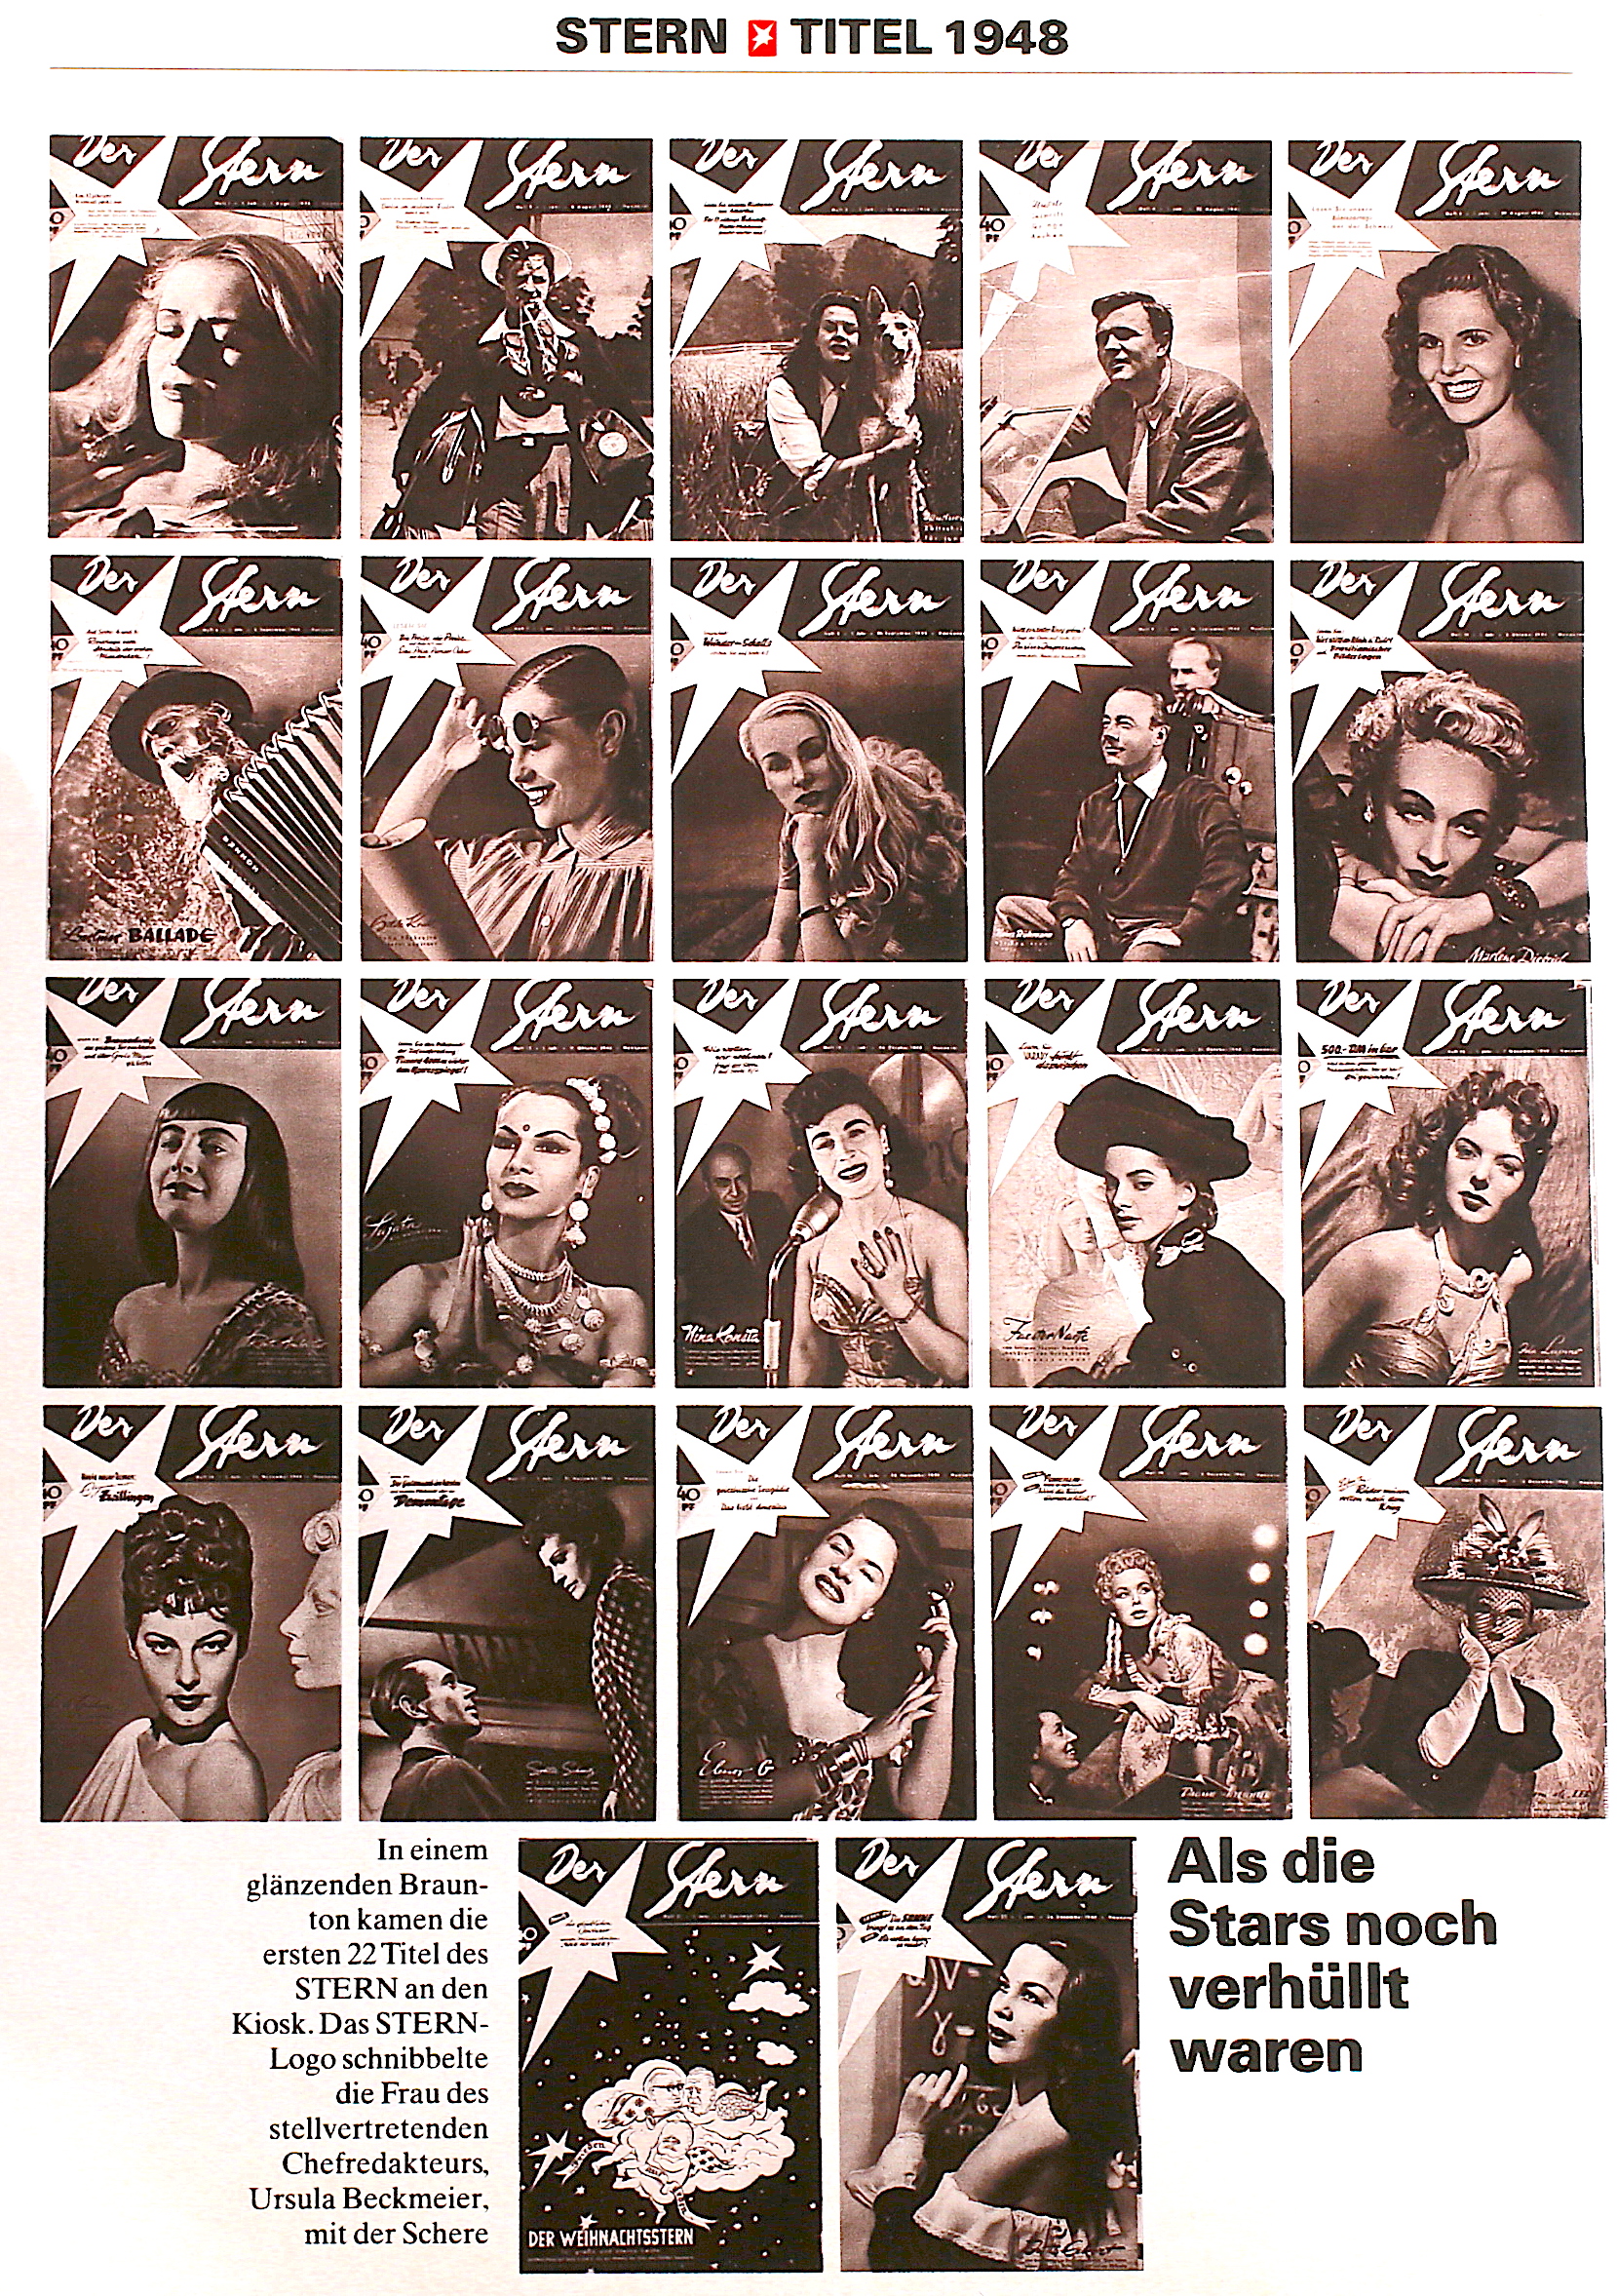 Stern Archiv Titelbilder 1948 1970 Historische Magazine De